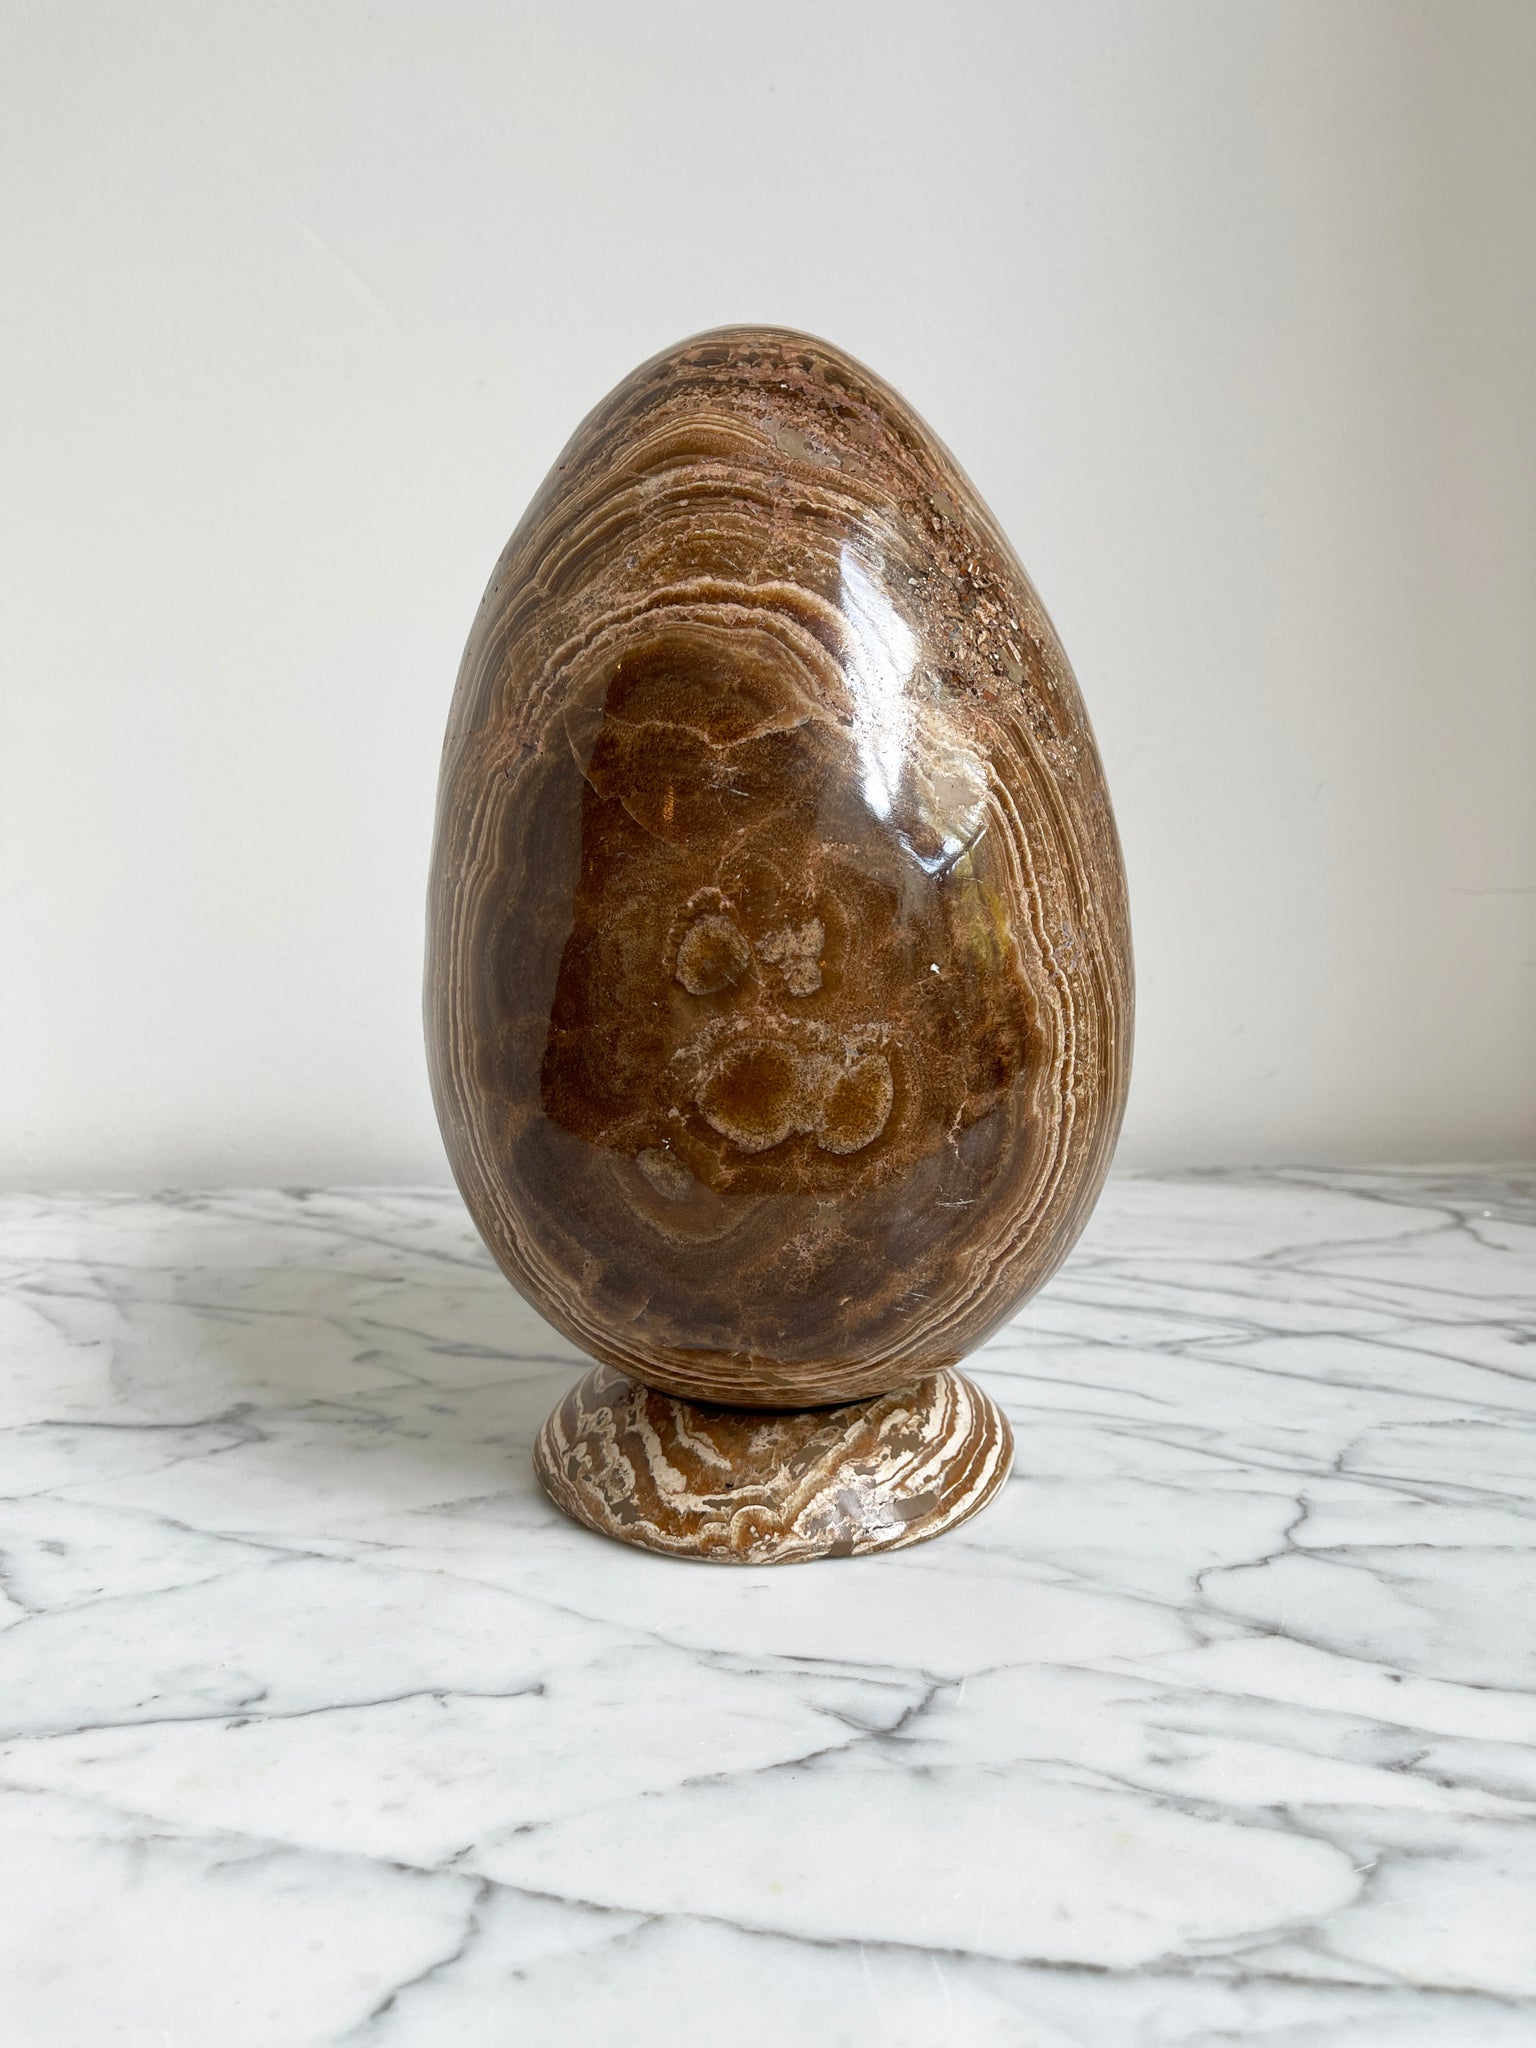 Aragonite Egg Shaped Stone